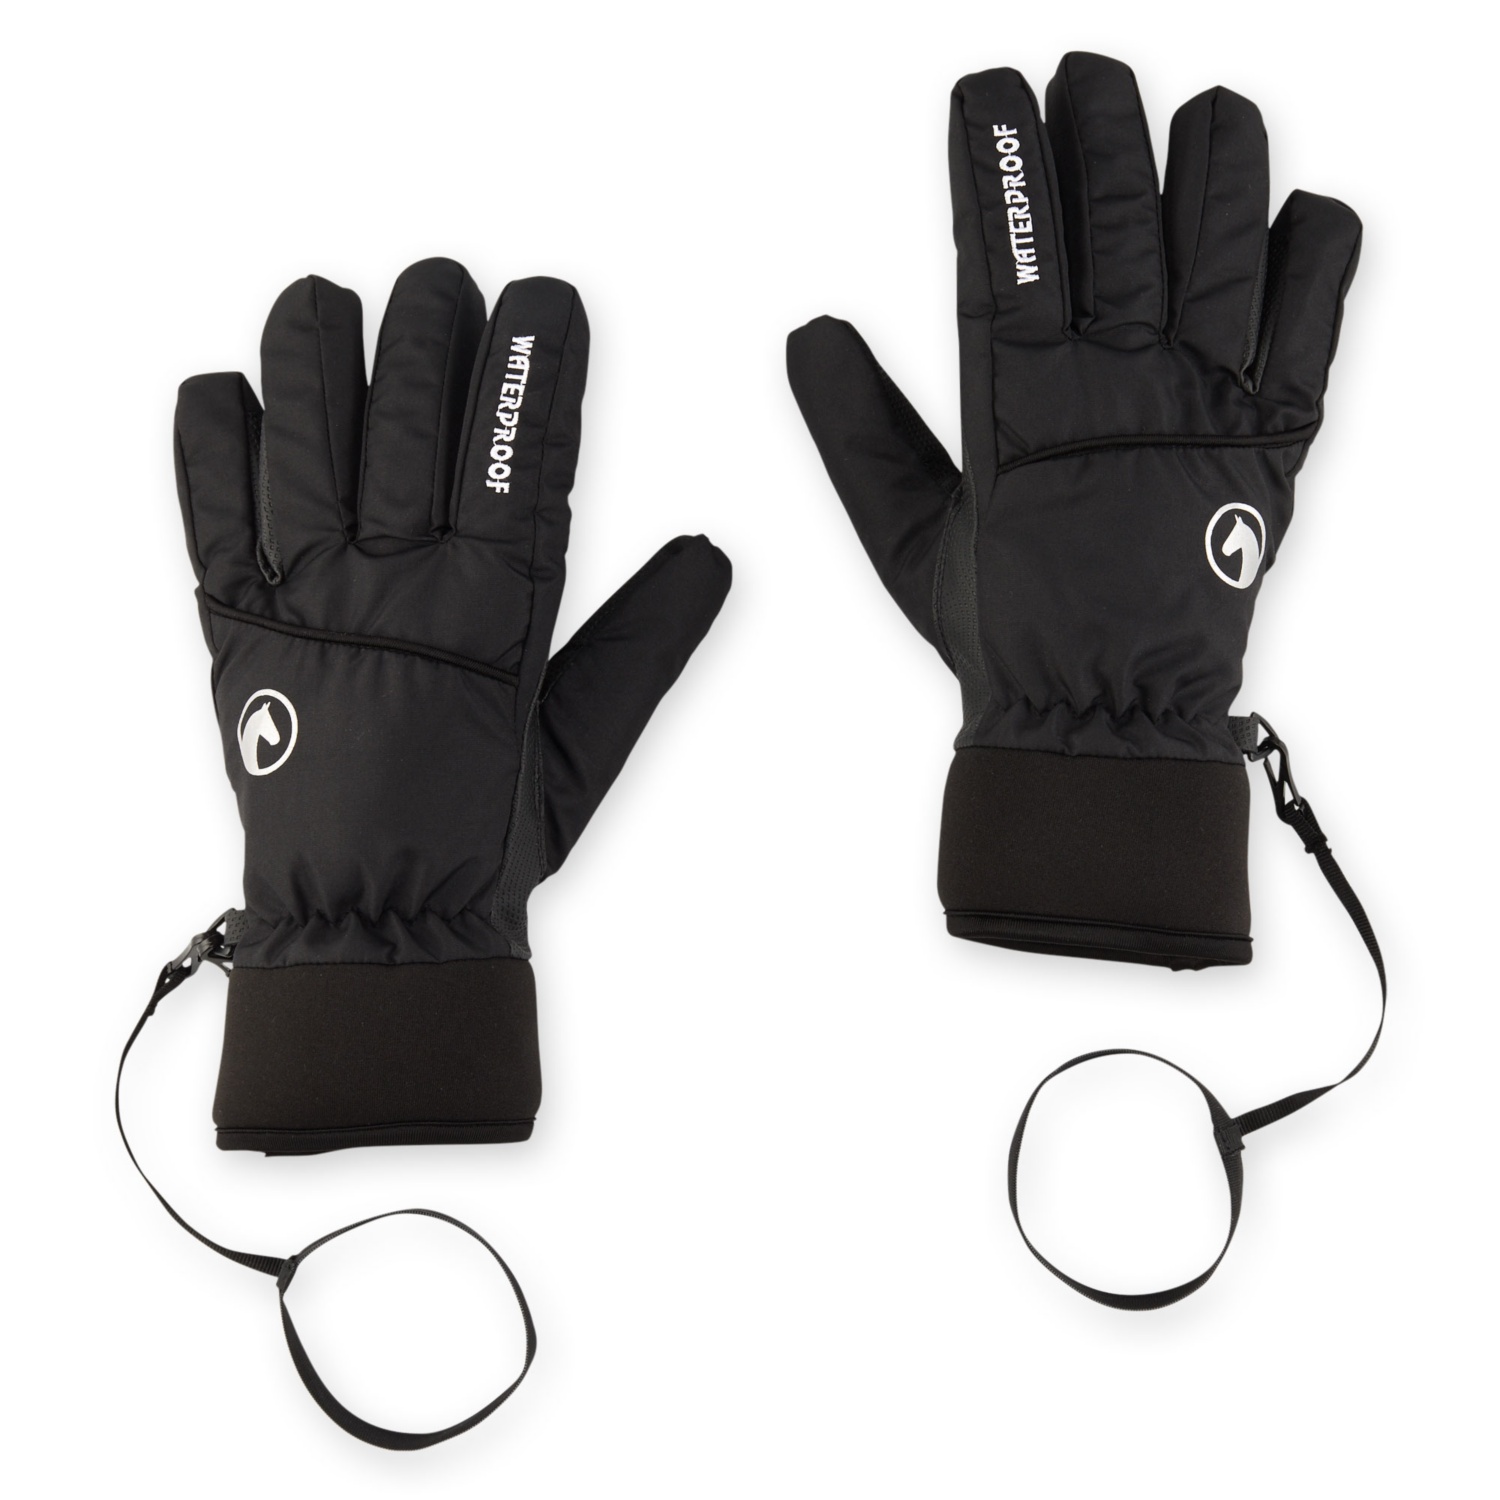 CRANE Damen-/Herren-Winter-Reitsport-Handschuhe